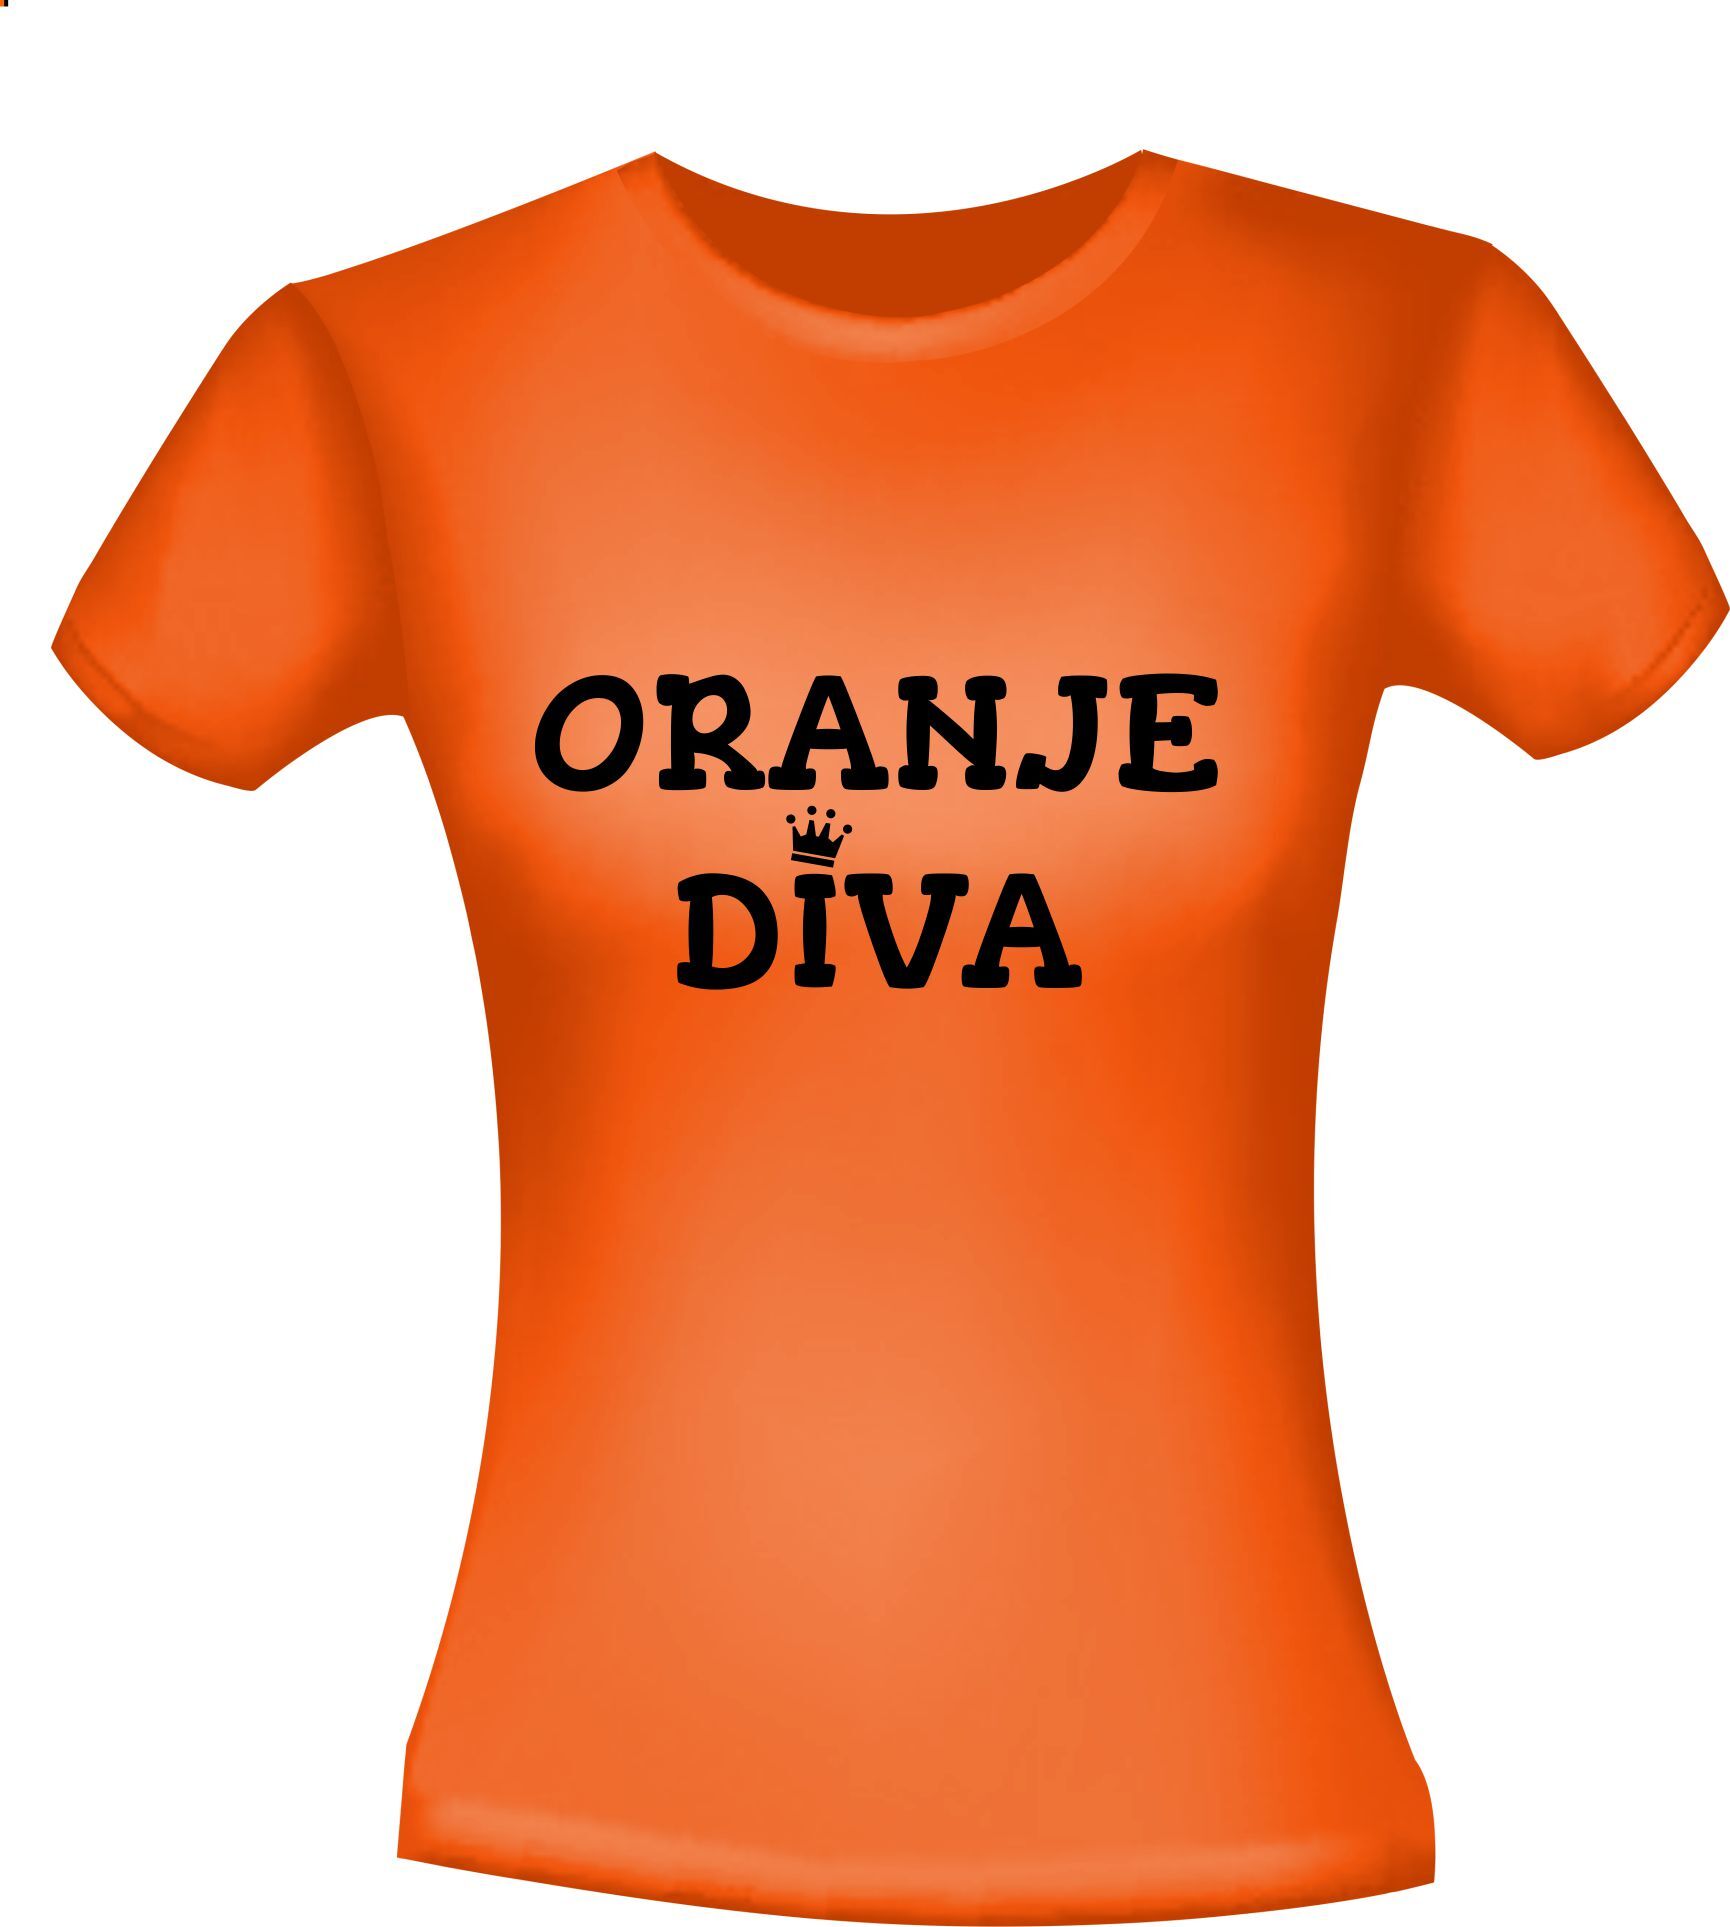 Oranje shirtje voor koningsdag voor een oranje diva